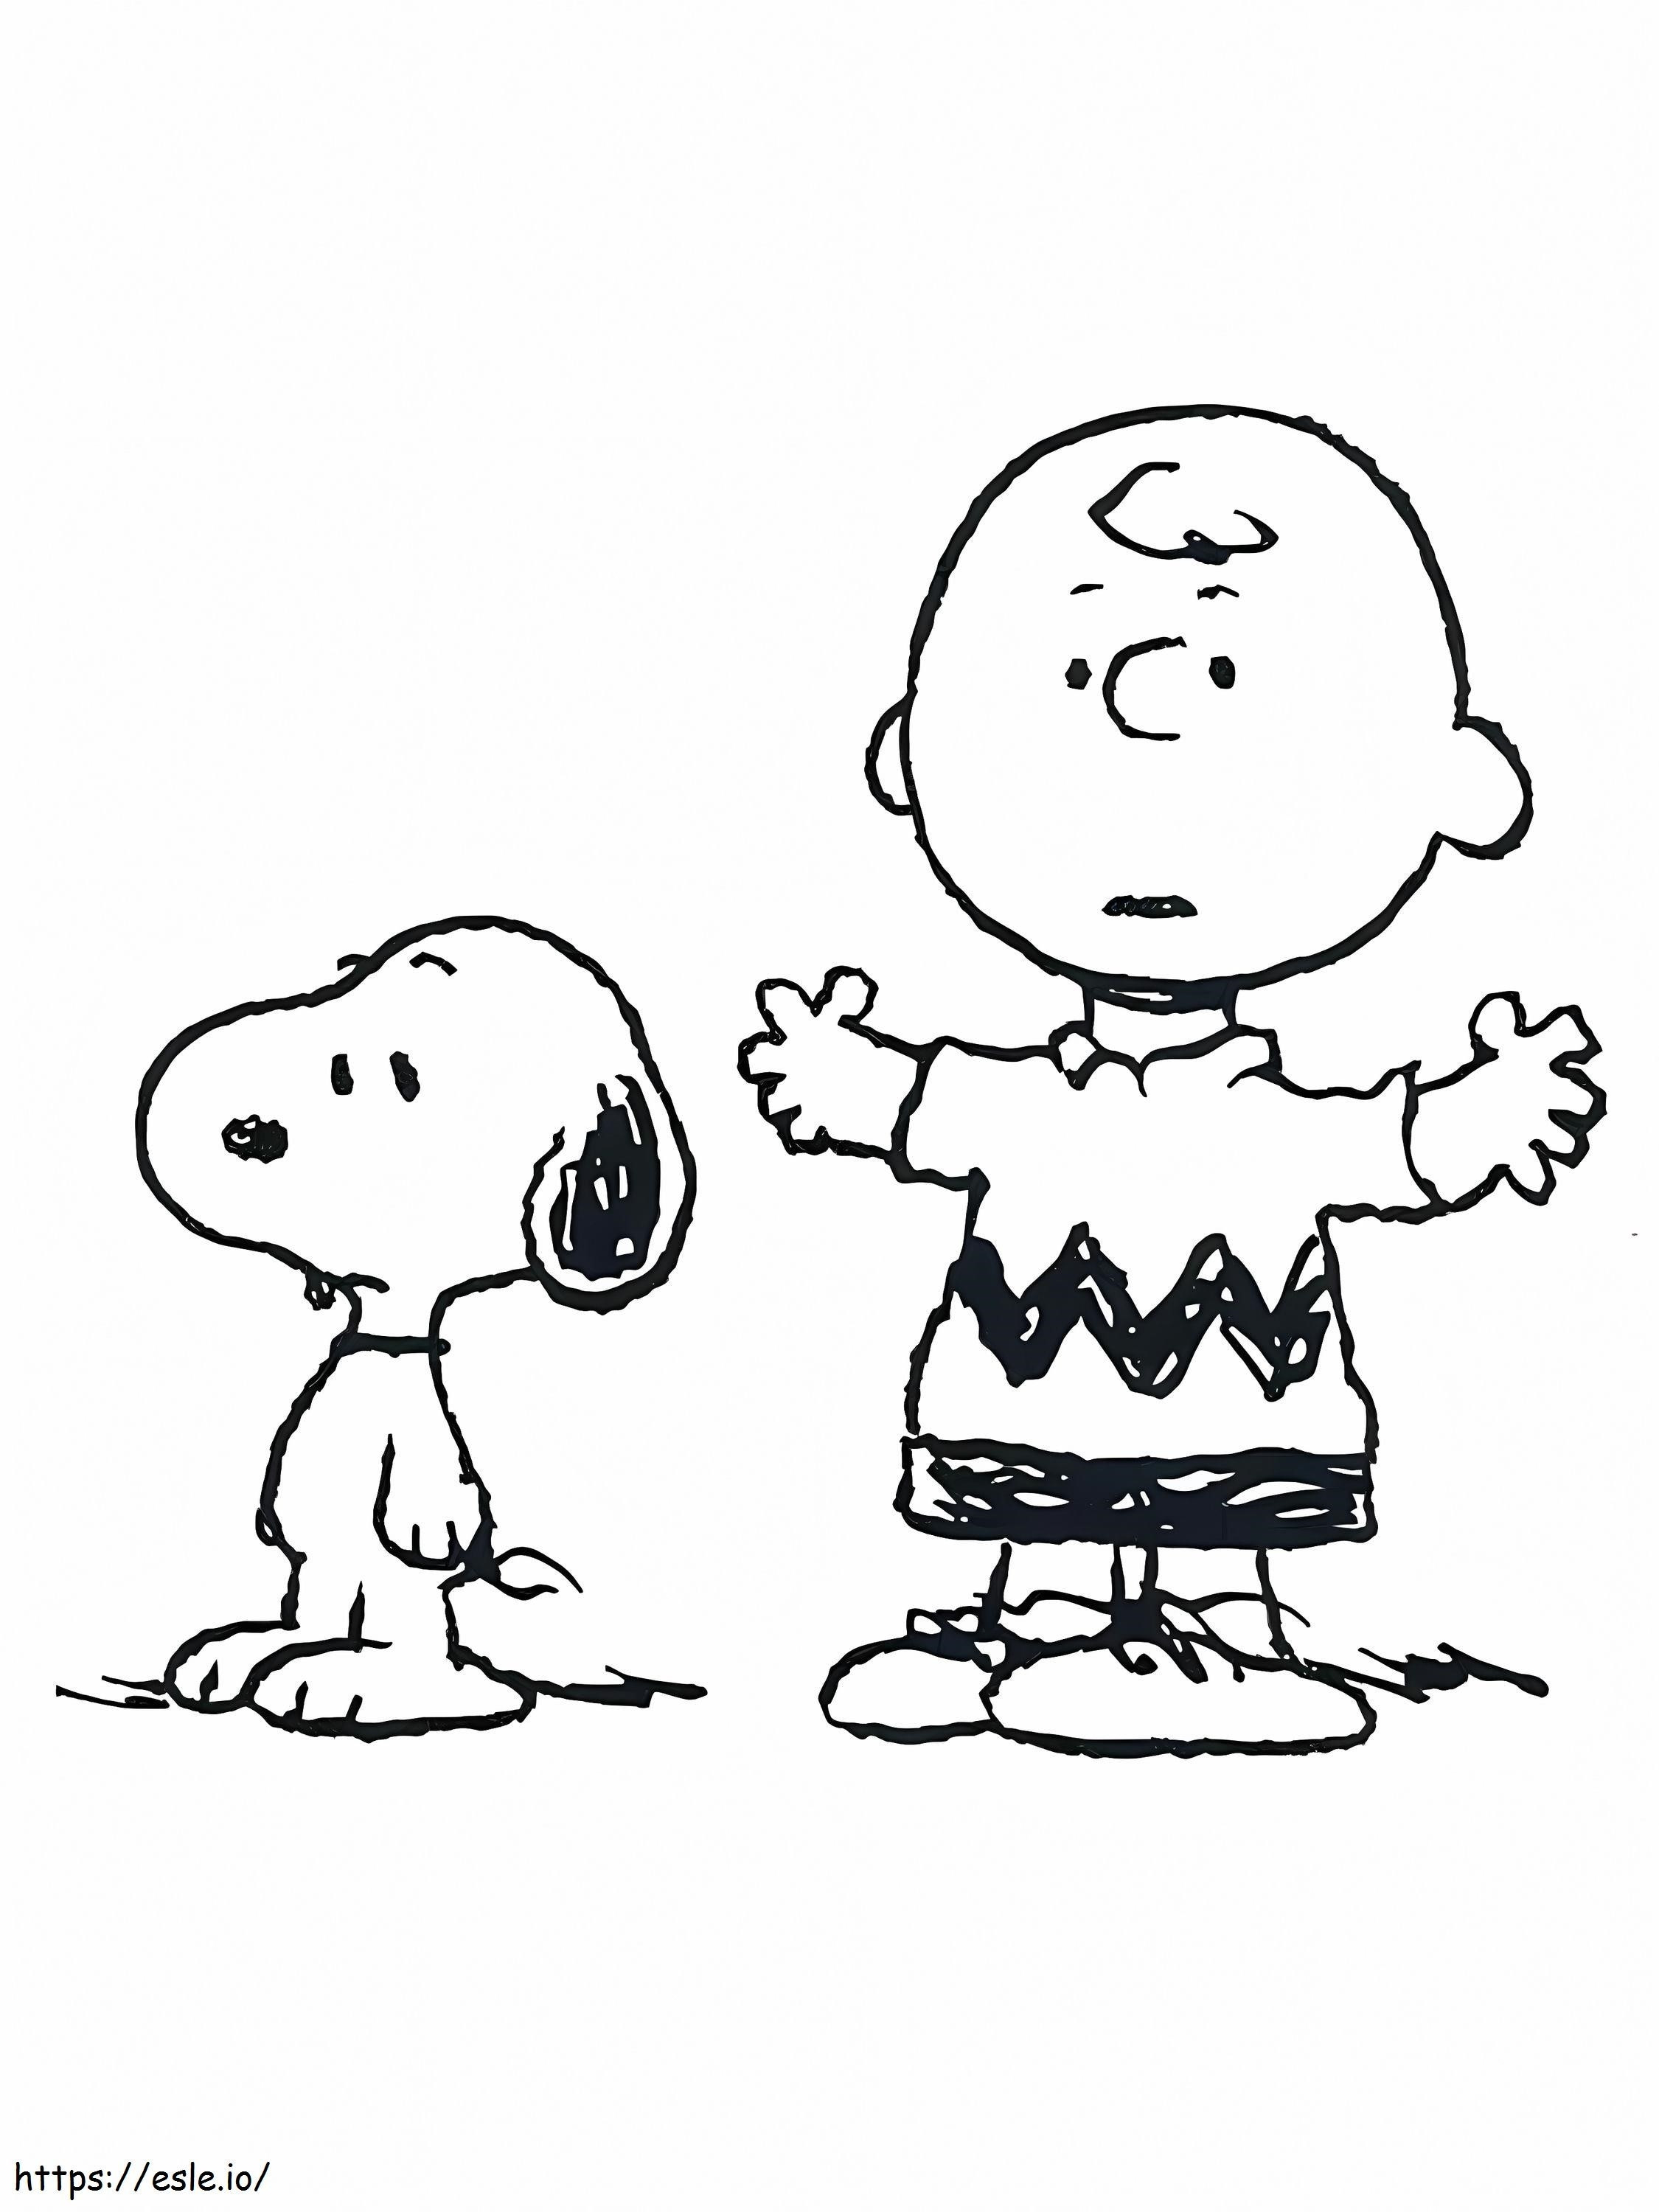 Snoopy und Charlie Brown ausmalbilder